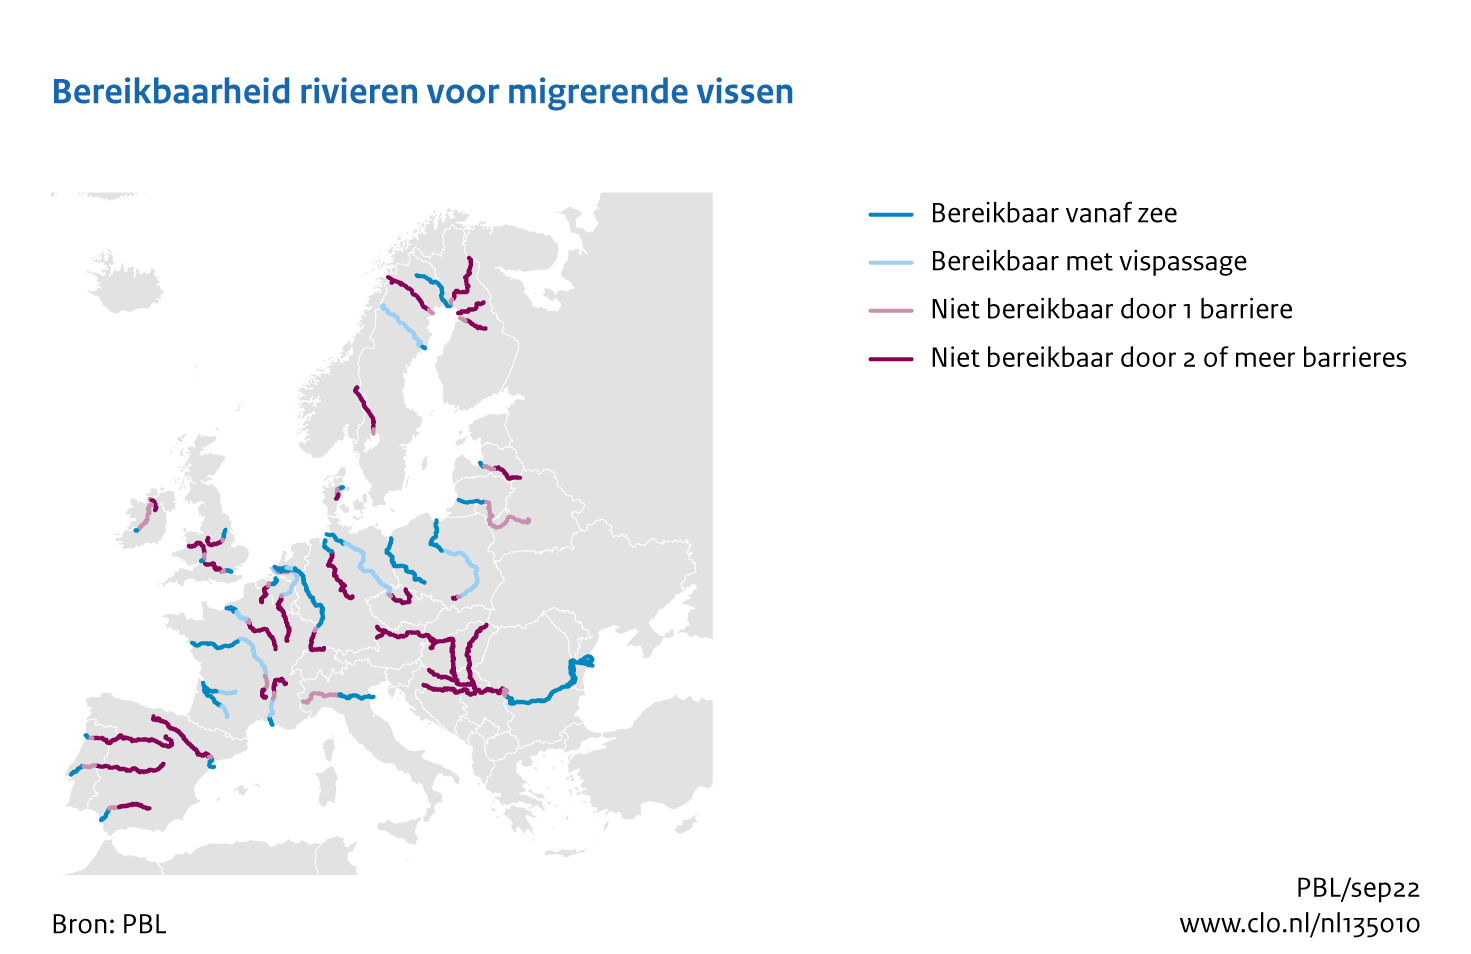 Figuur Bereikbaarheid Europese rivieren. In de rest van de tekst wordt deze figuur uitgebreider uitgelegd.